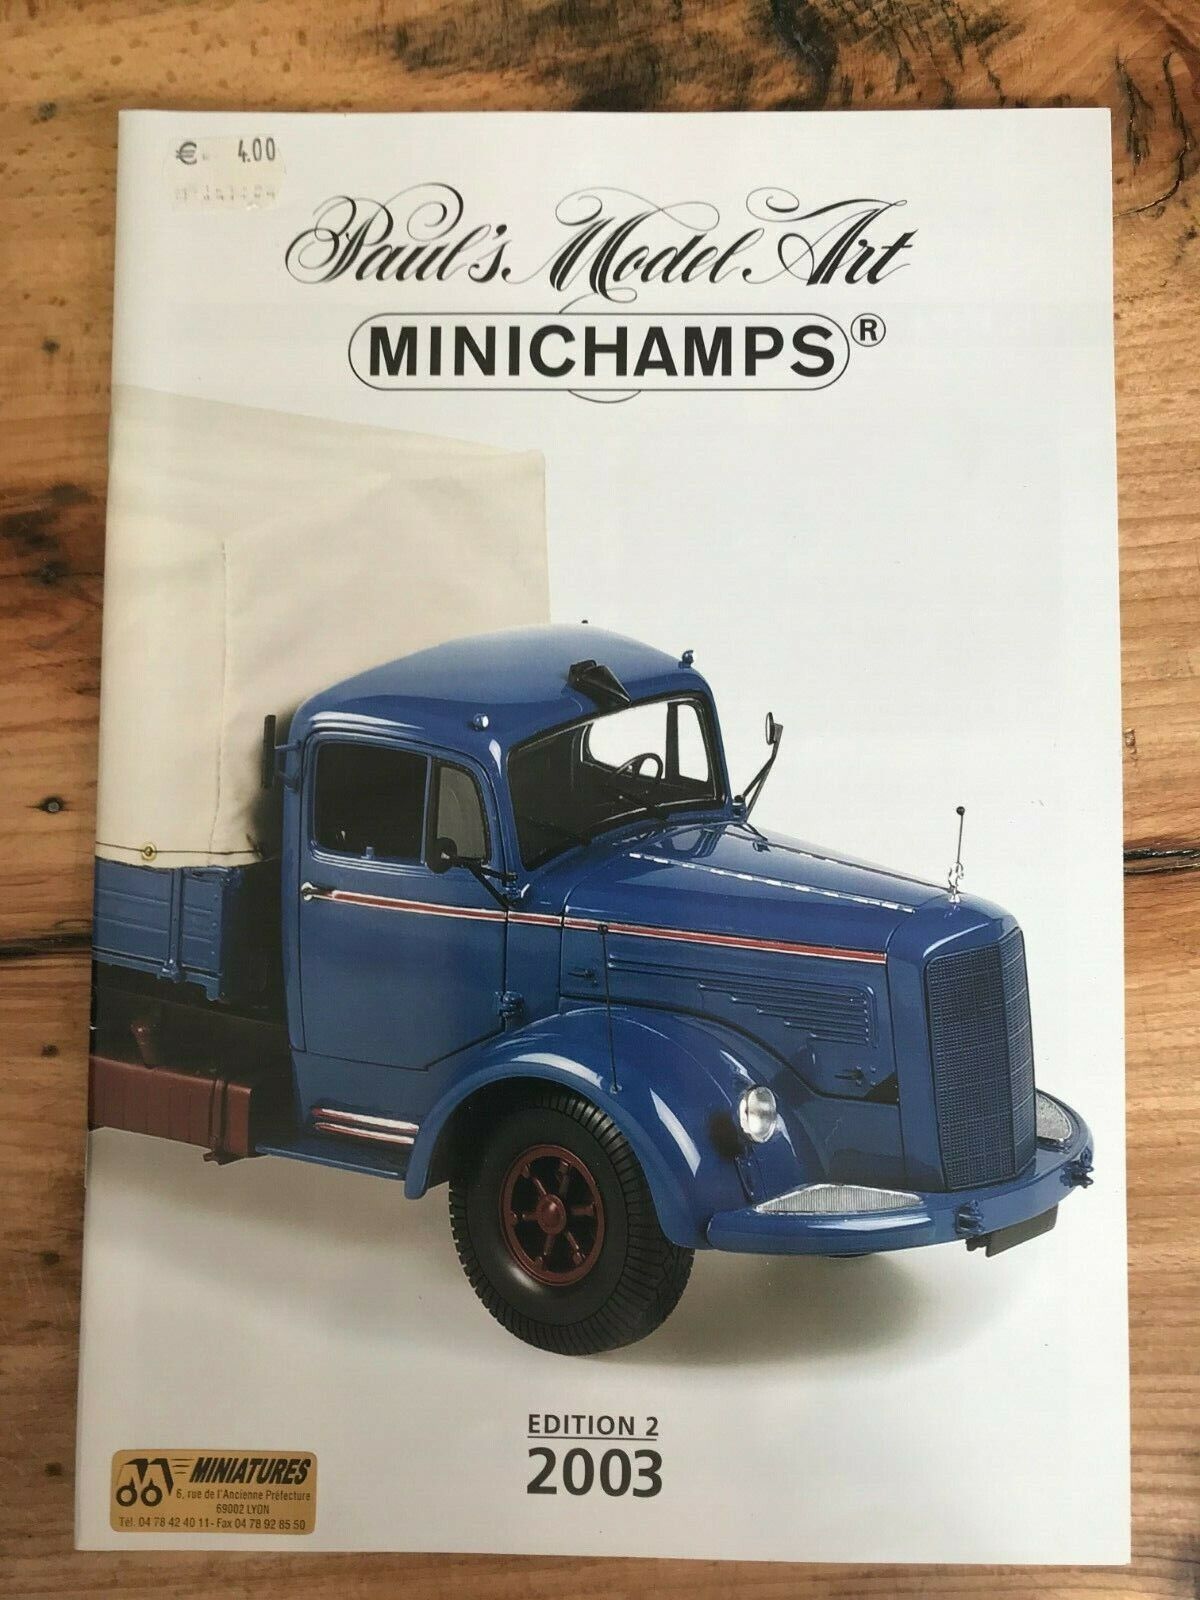 Dv9510 minichamps catalogue 2 edition (2003) 21x30cm 31 pages ve